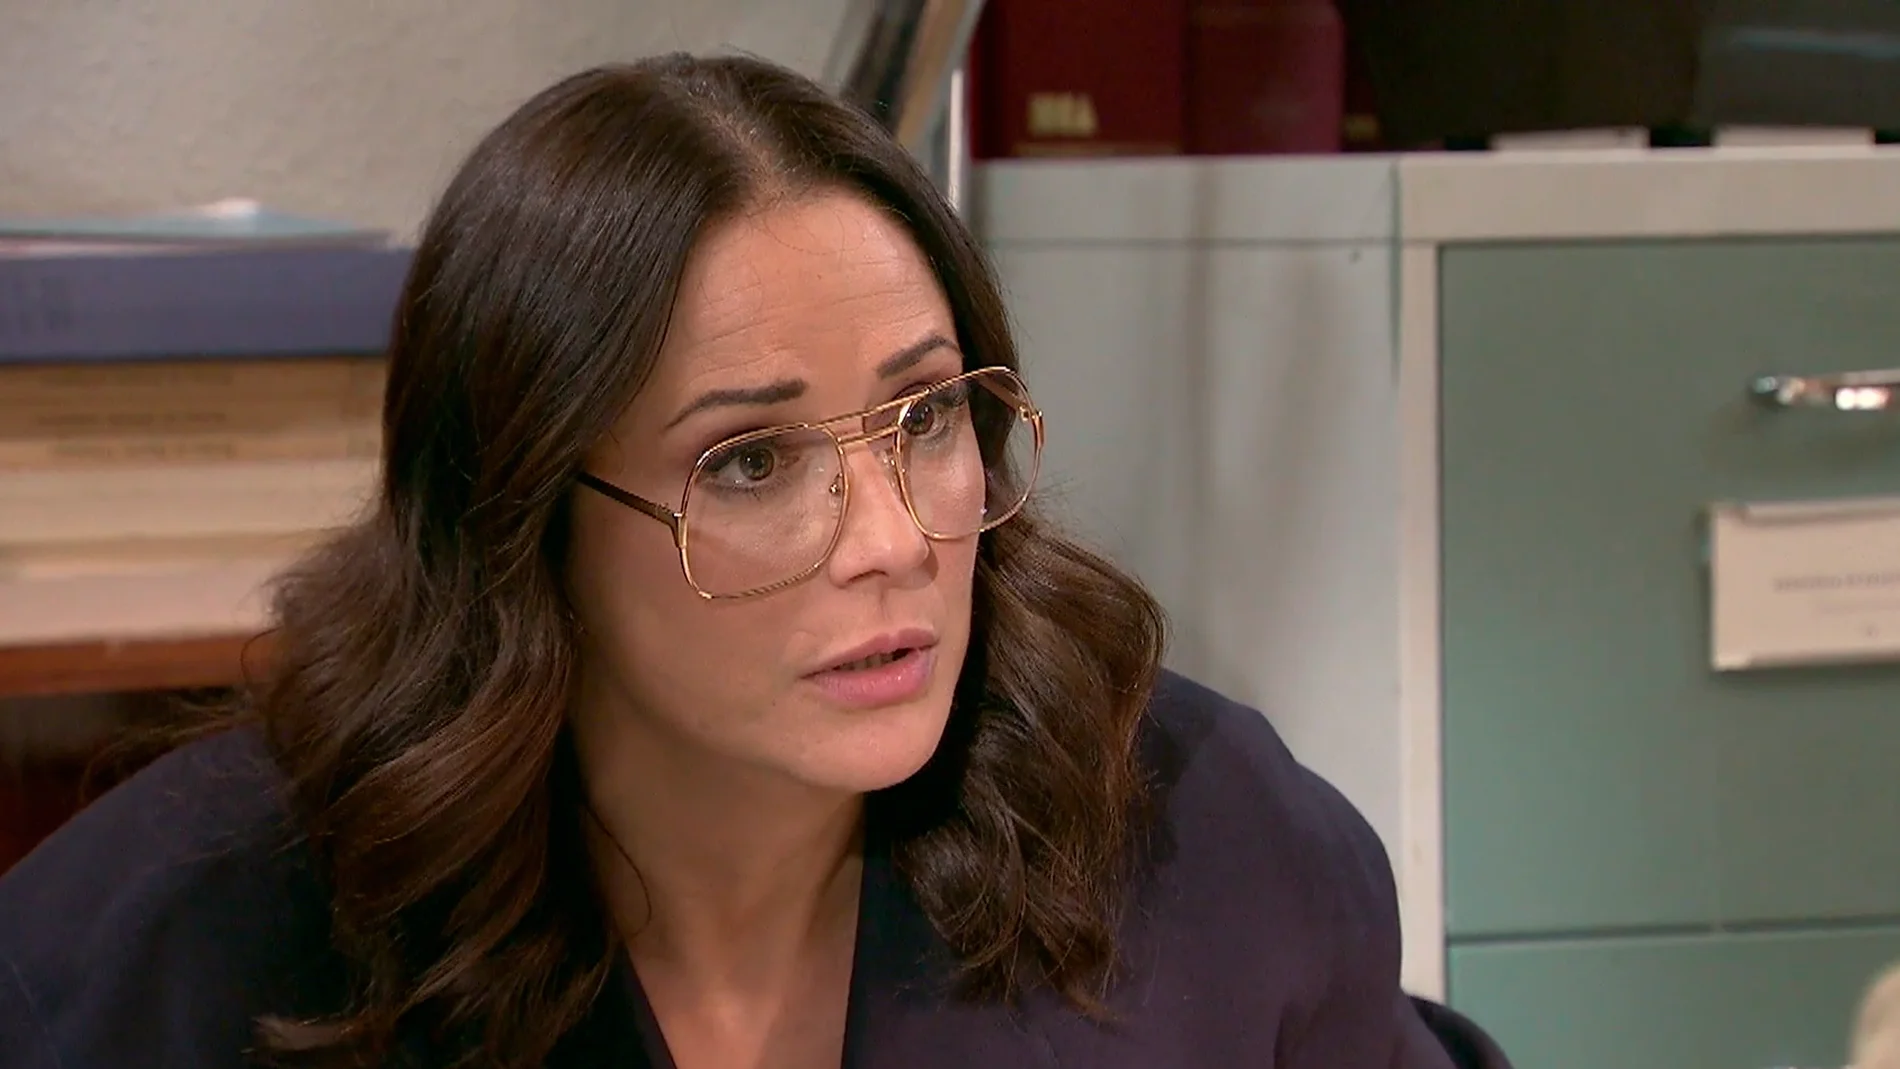 Cristina se derrumba al descubrir el secreto de Rubén y estalla contra Sancho: "¿No te cansas de remover mierda?"